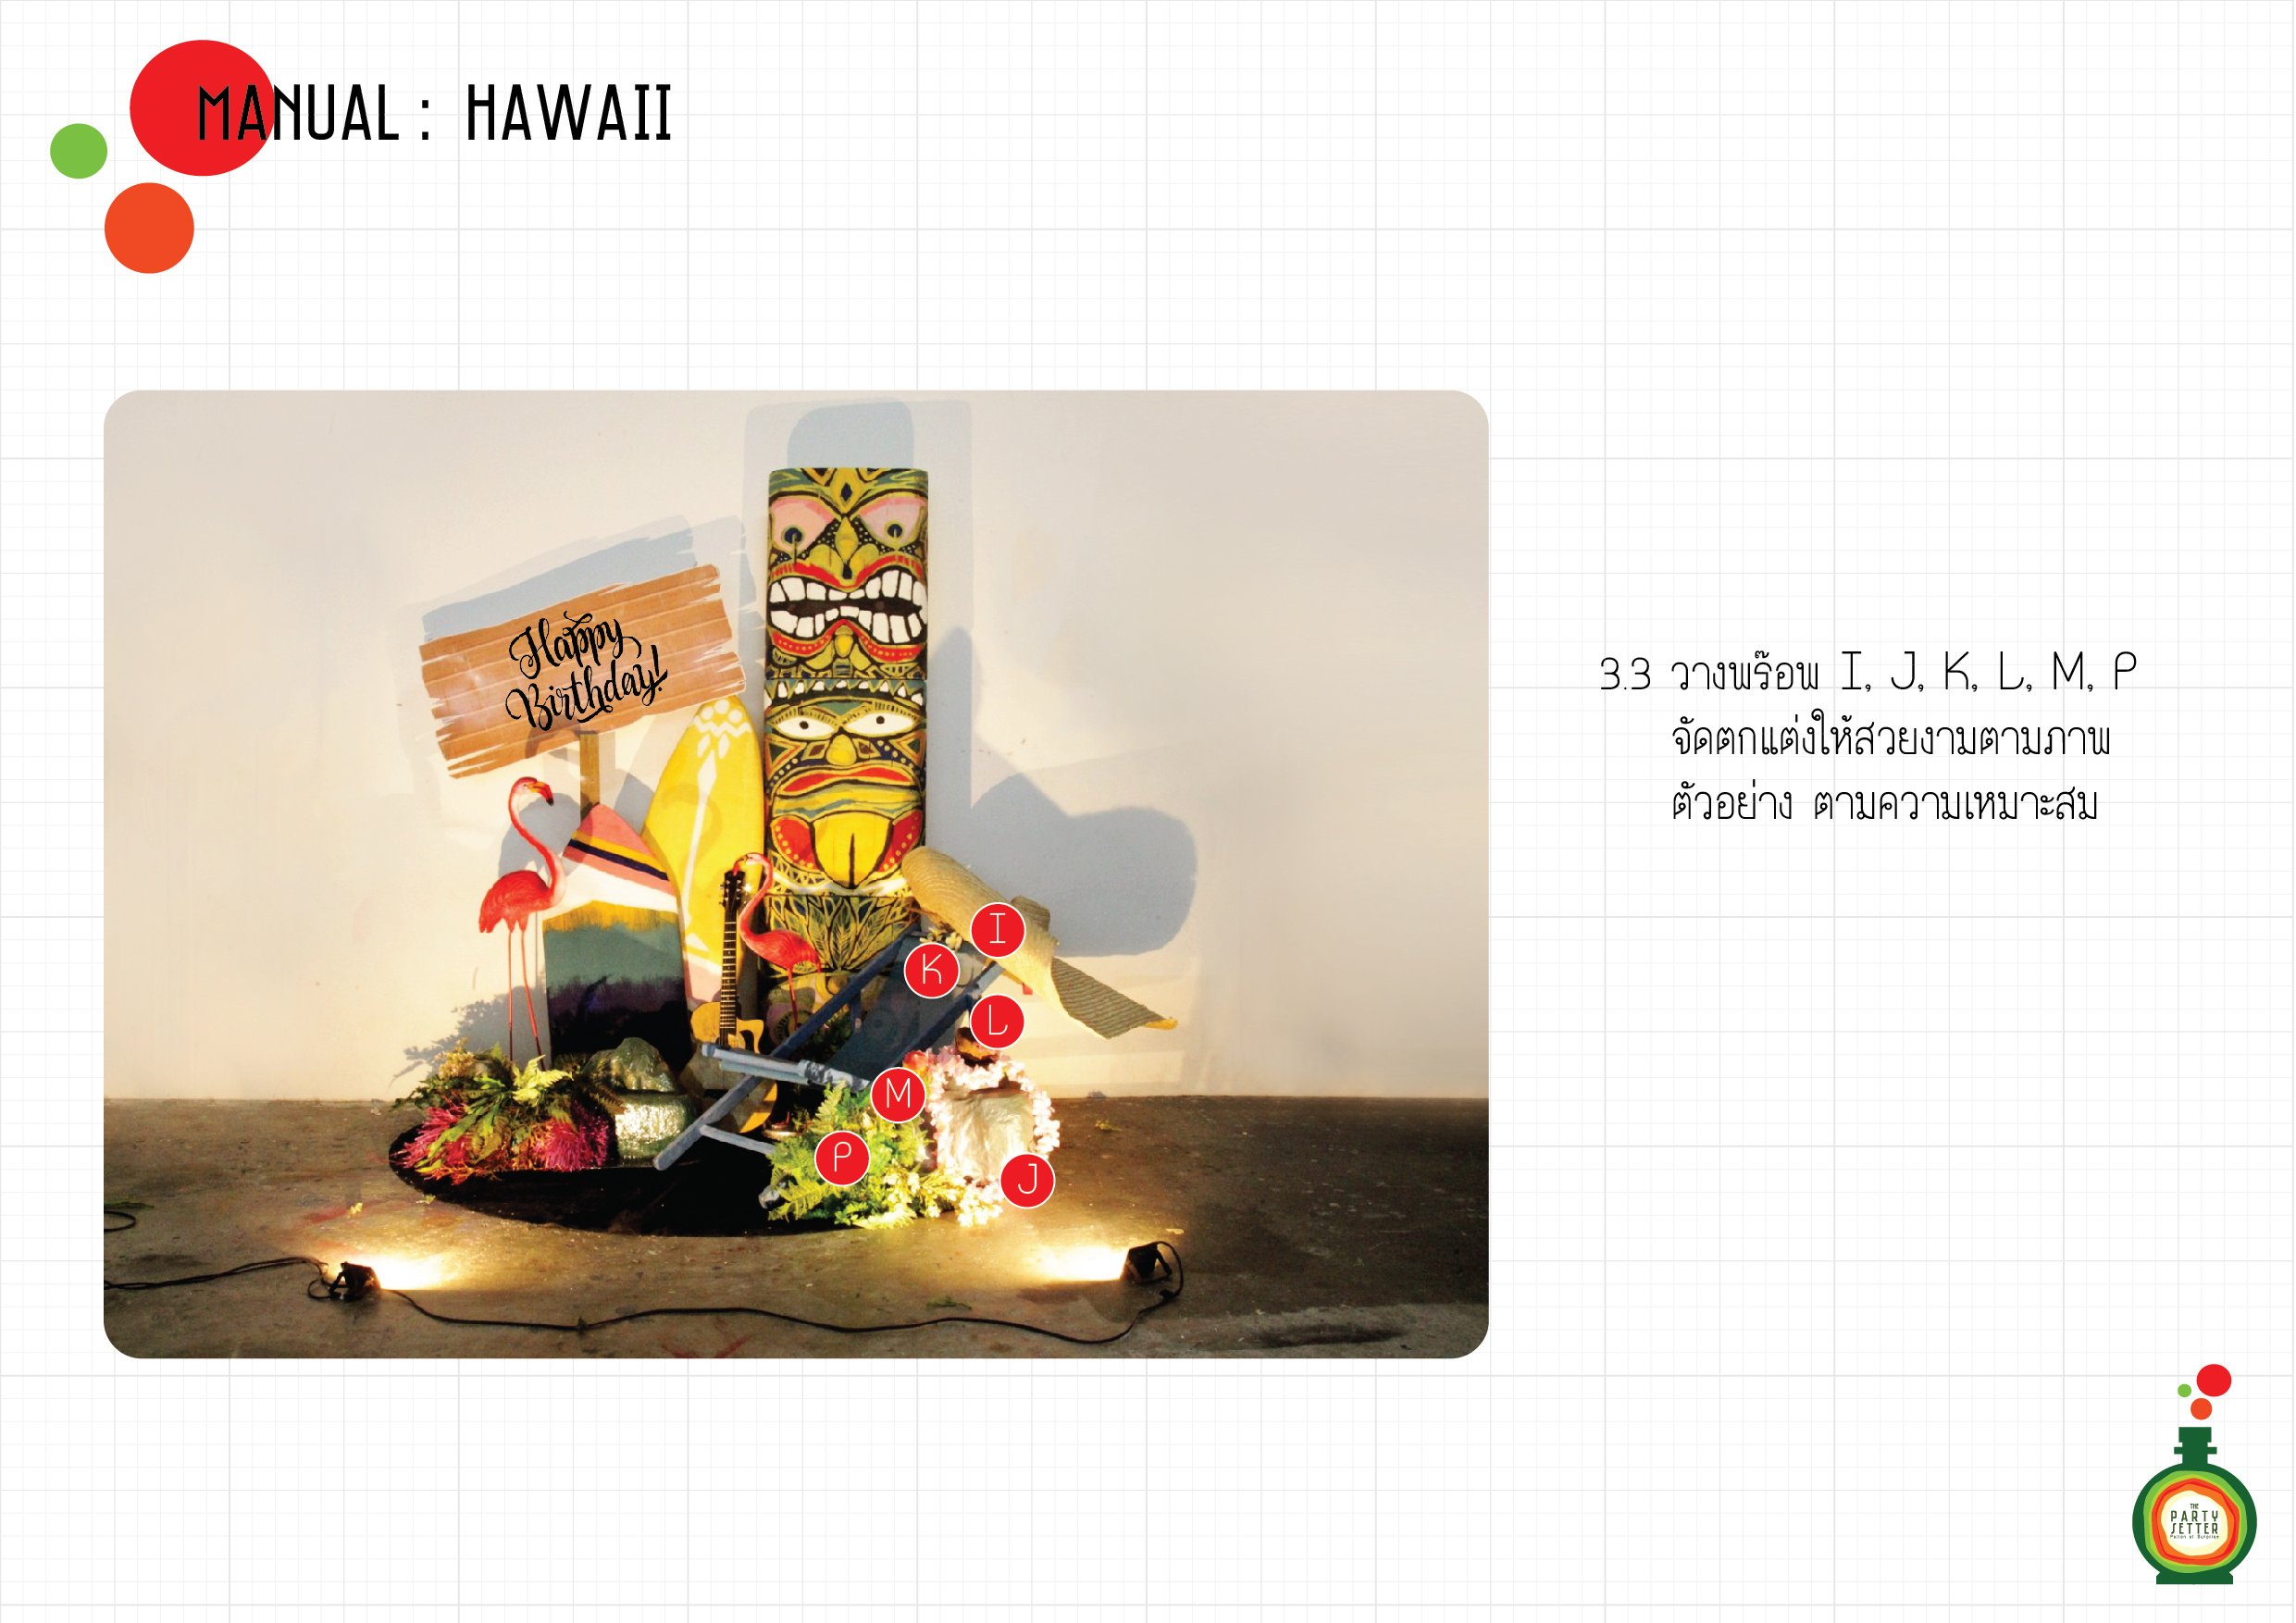 Manual_Hawaii-4-03.3-01.jpg